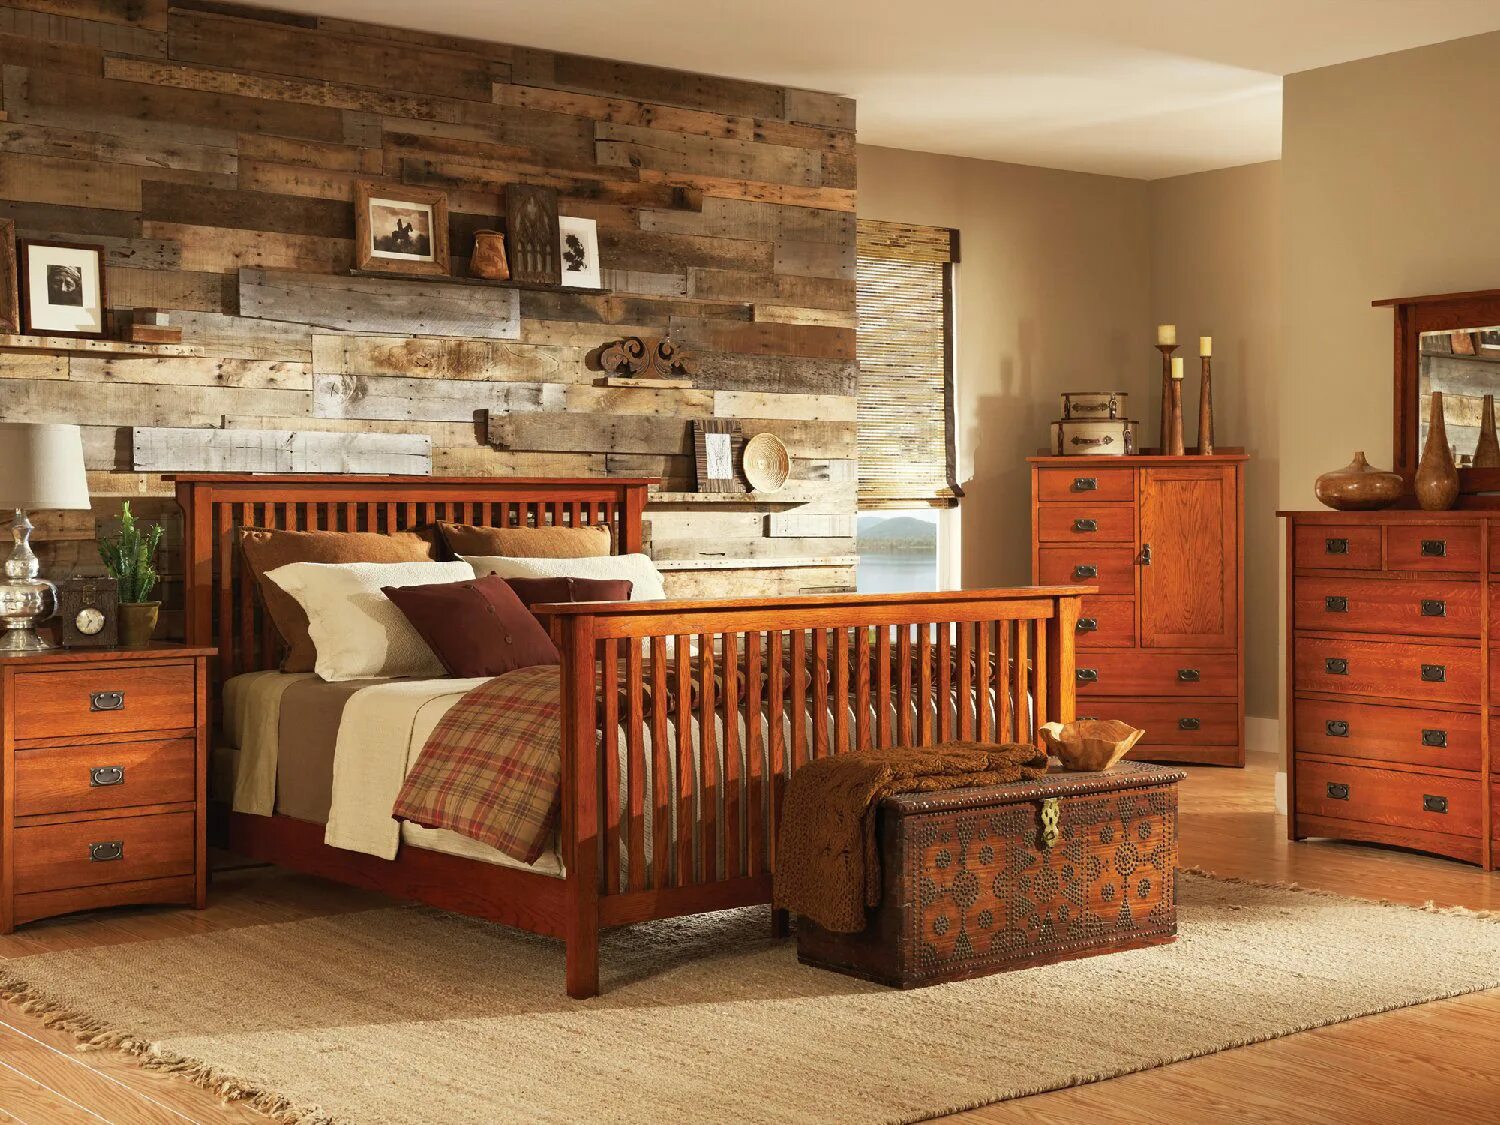 Wooden мебель. Комната с деревянной мебелью. Деревянная мебель в интерьере. Спальня из дерева. Спальня с деревянной мебелью.